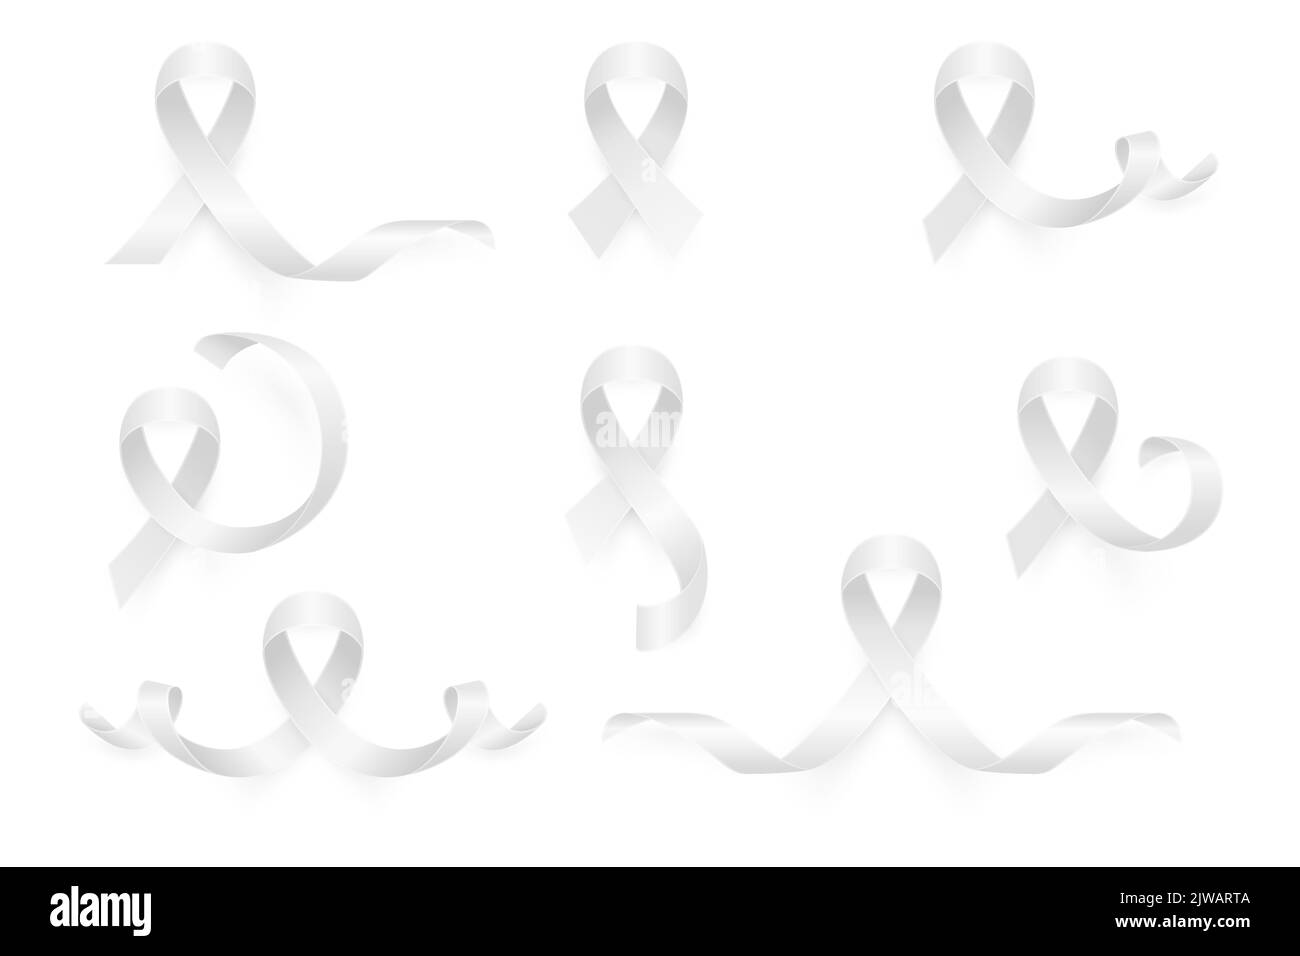 Vector 3D realistisches Weißes Farbband-Set. Nahaufnahme Des Symbols Für Lungenkrebs. Vorlage Für Krebsband. Konzept Des Weltlungenkrebstages Stock Vektor